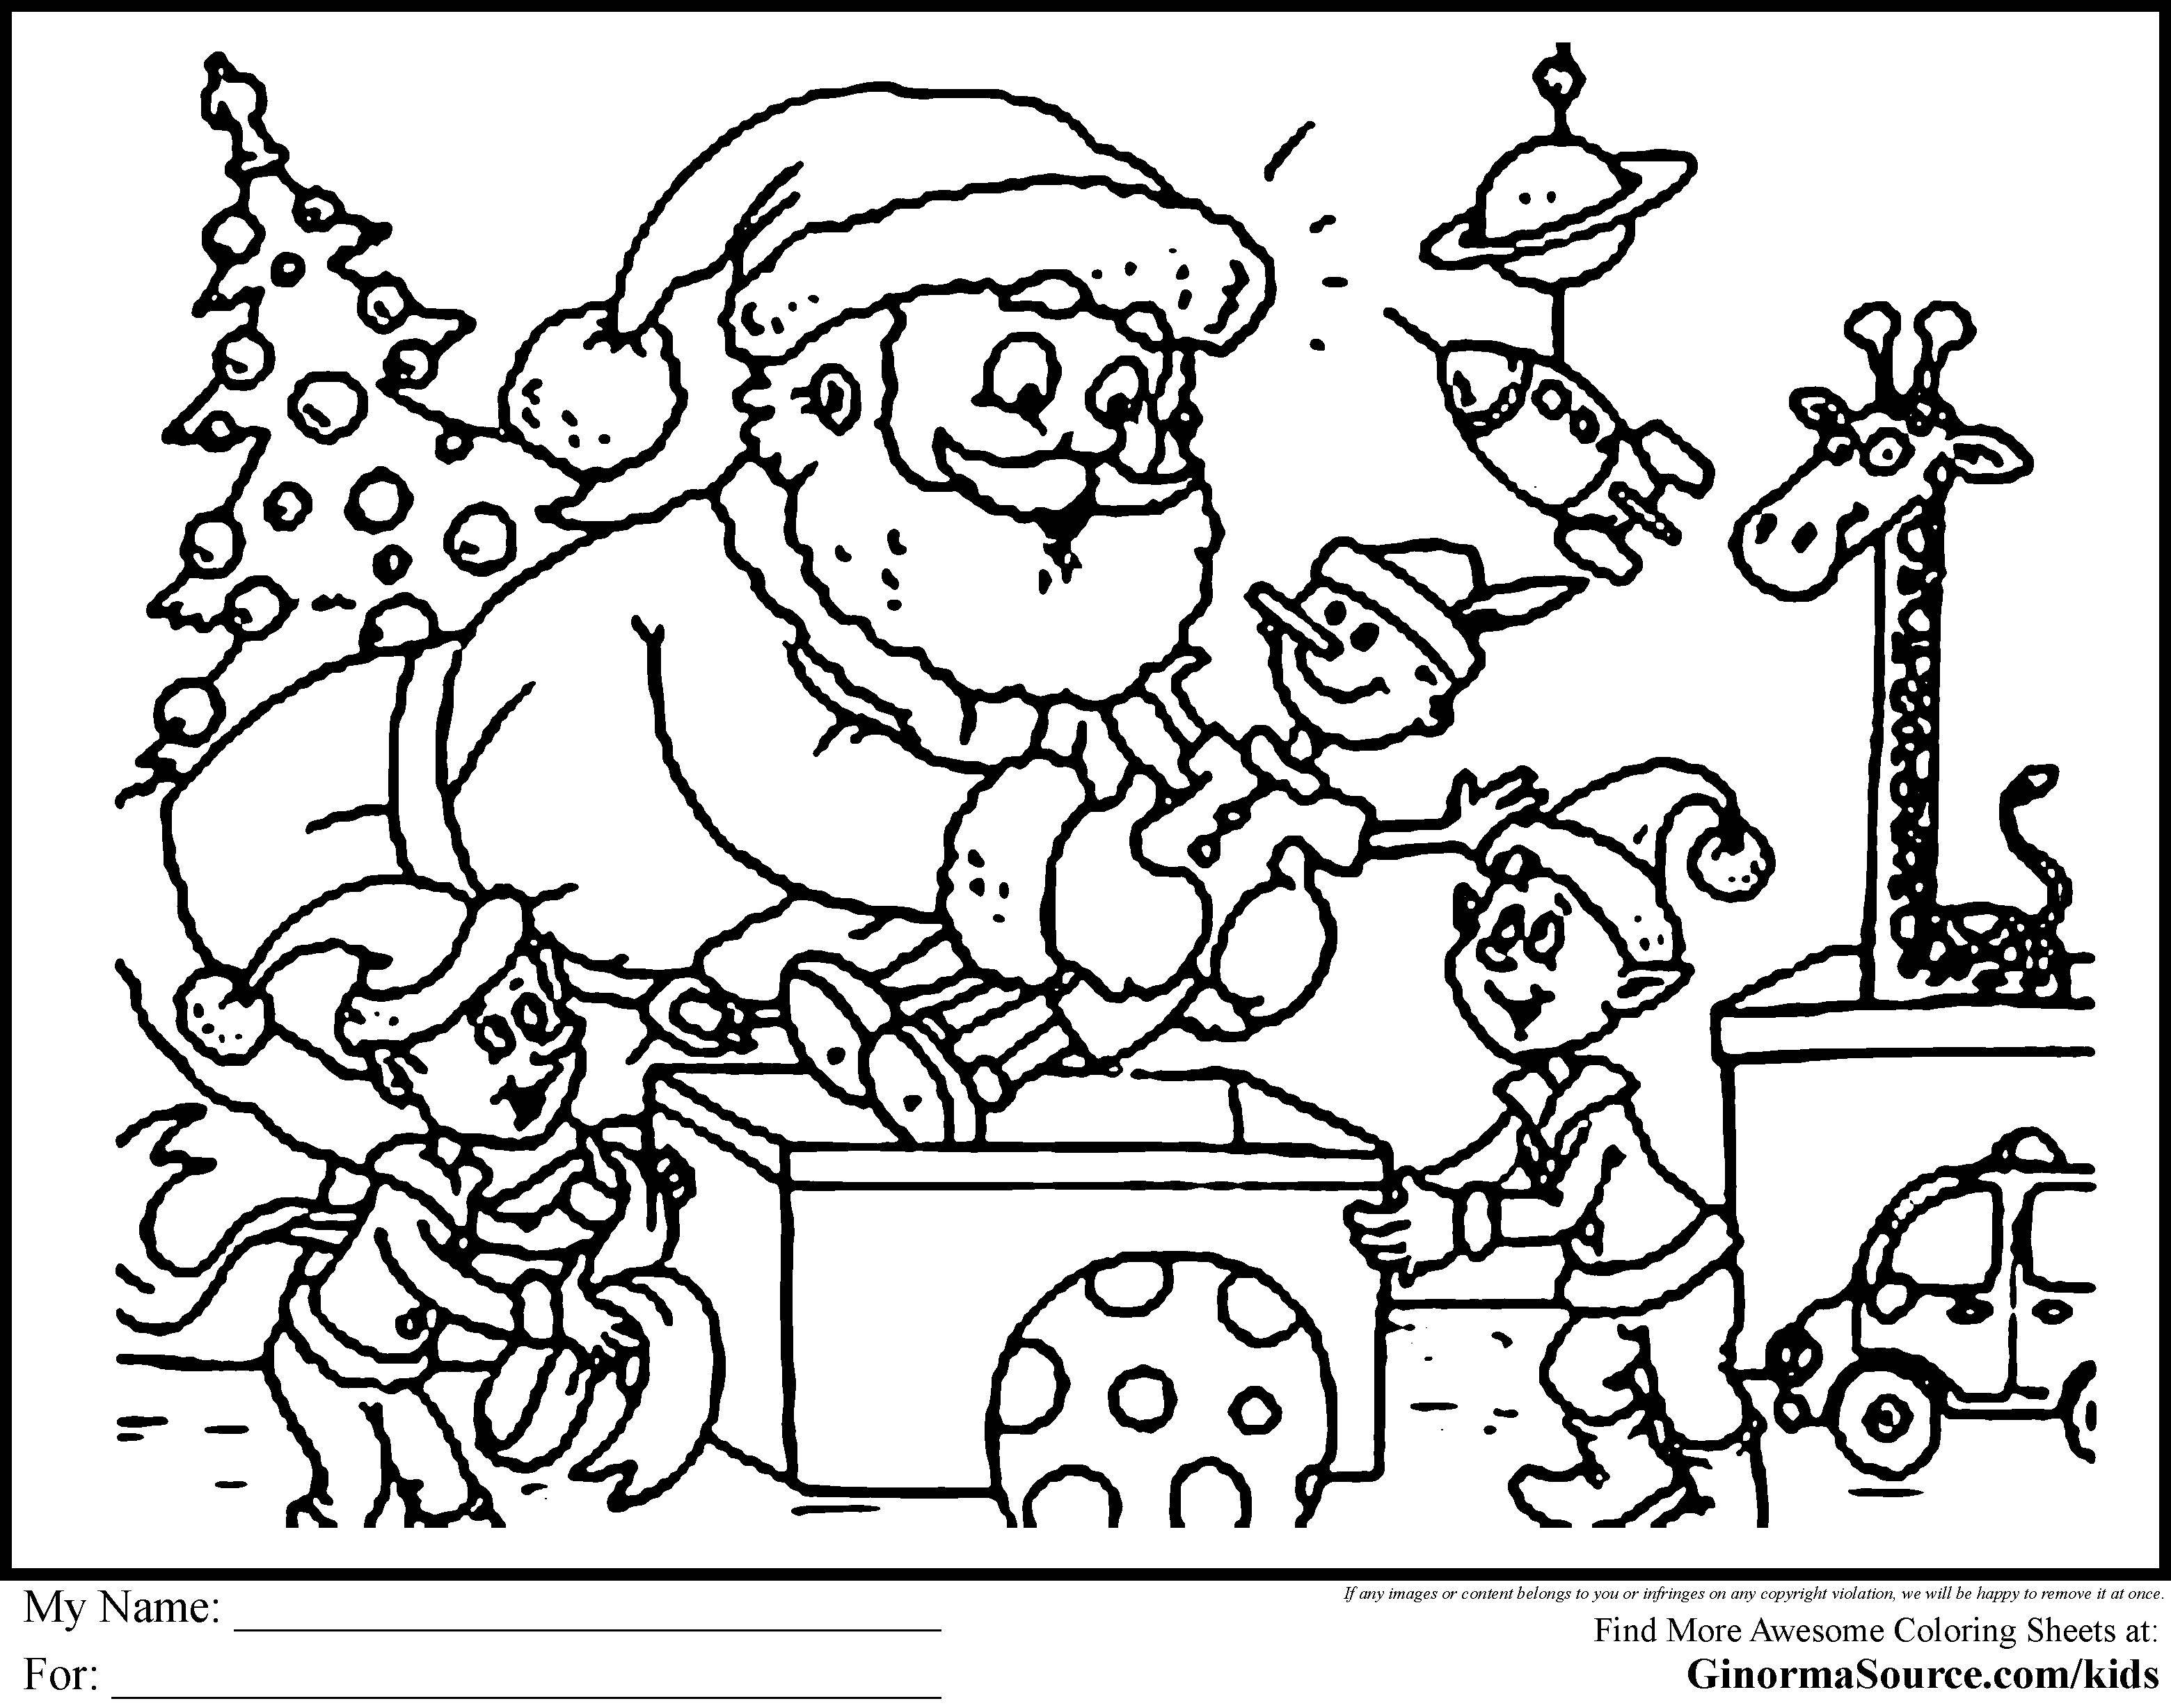 Coloring Santa makes the gifts. Category Christmas. Tags:  Christmas, Santa Claus, gifts.